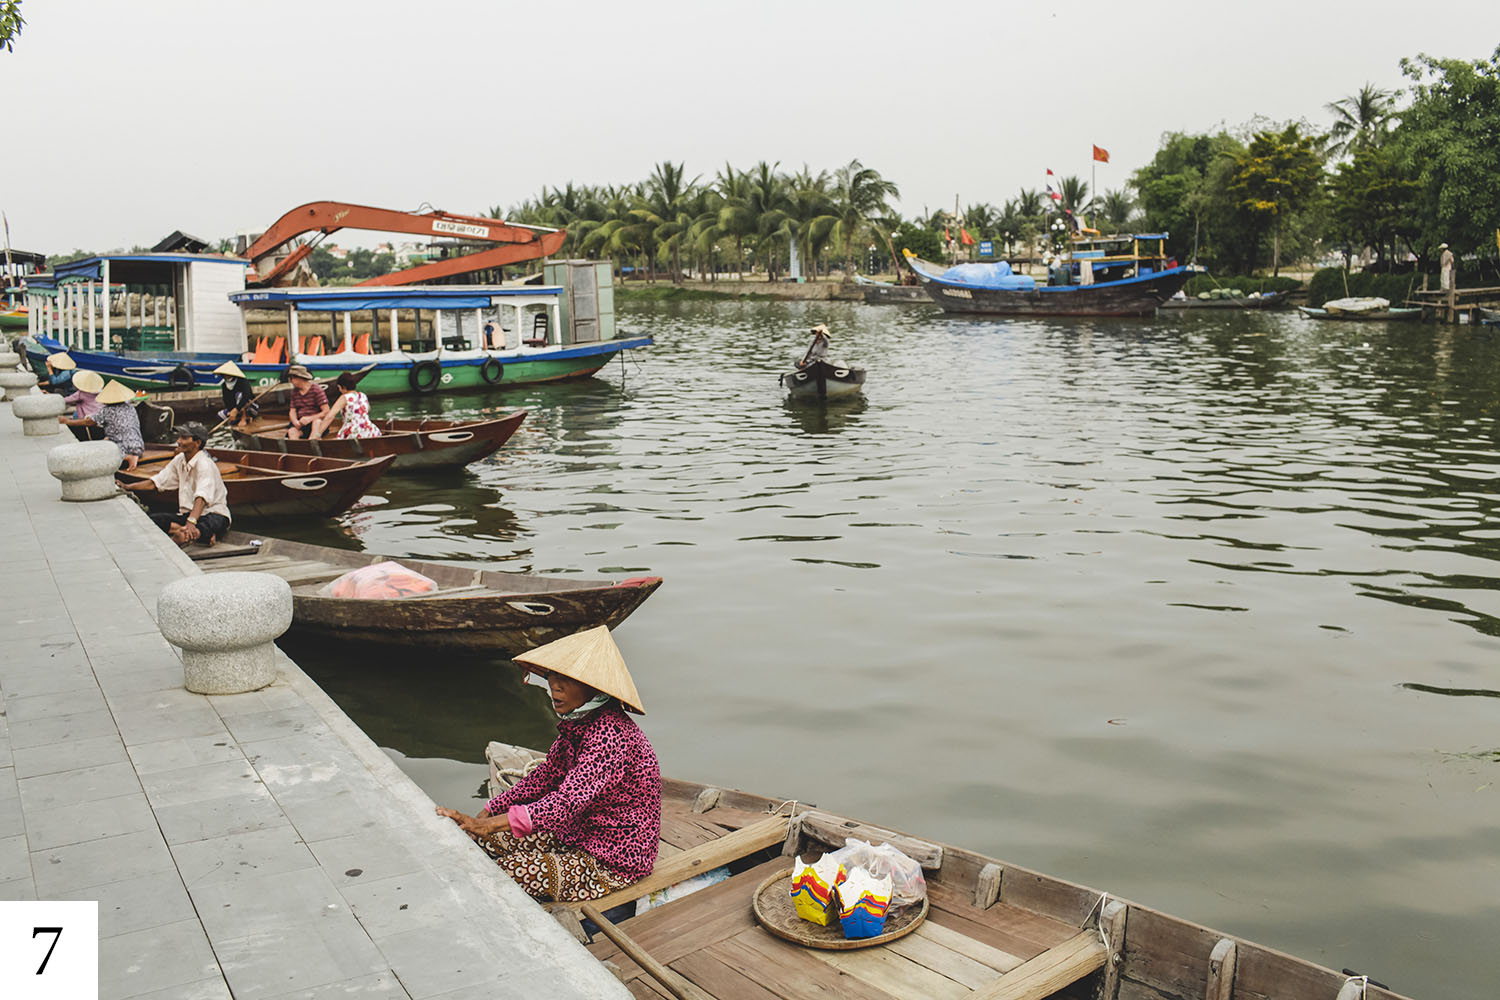 photo de paysage par maggieboucherphoto lors d'un voyage au vietnam.